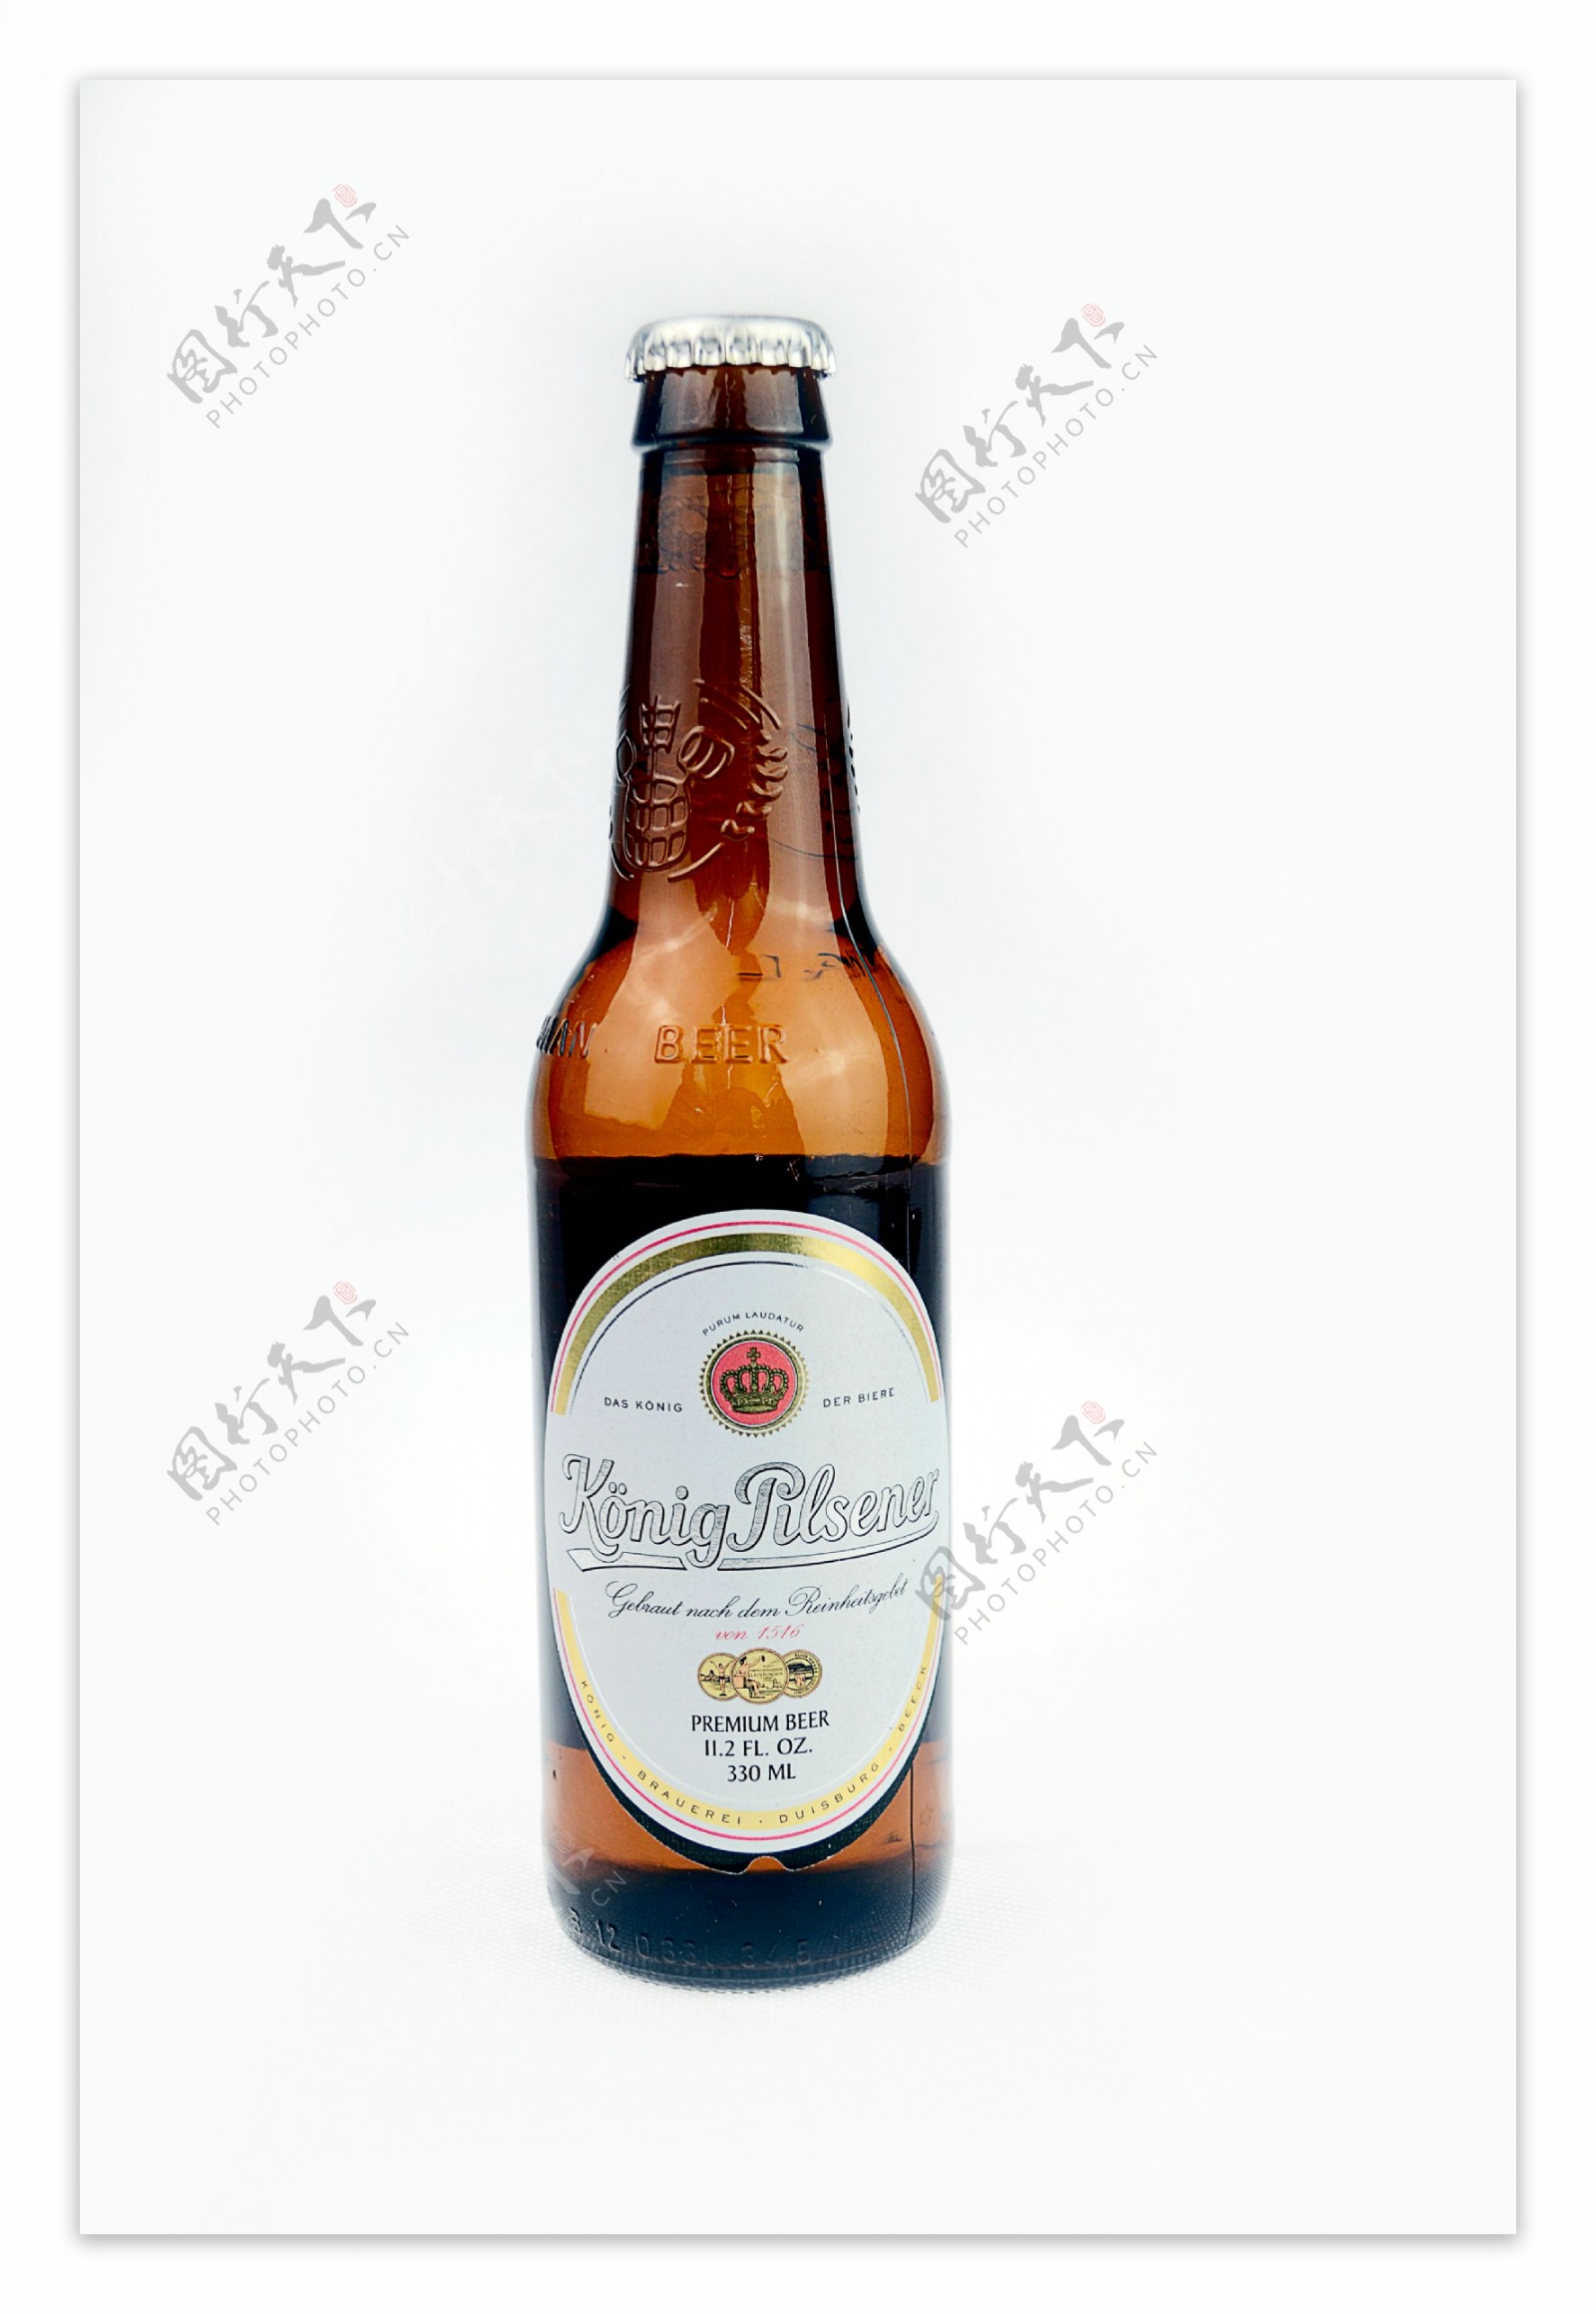 酒瓶啤酒图片